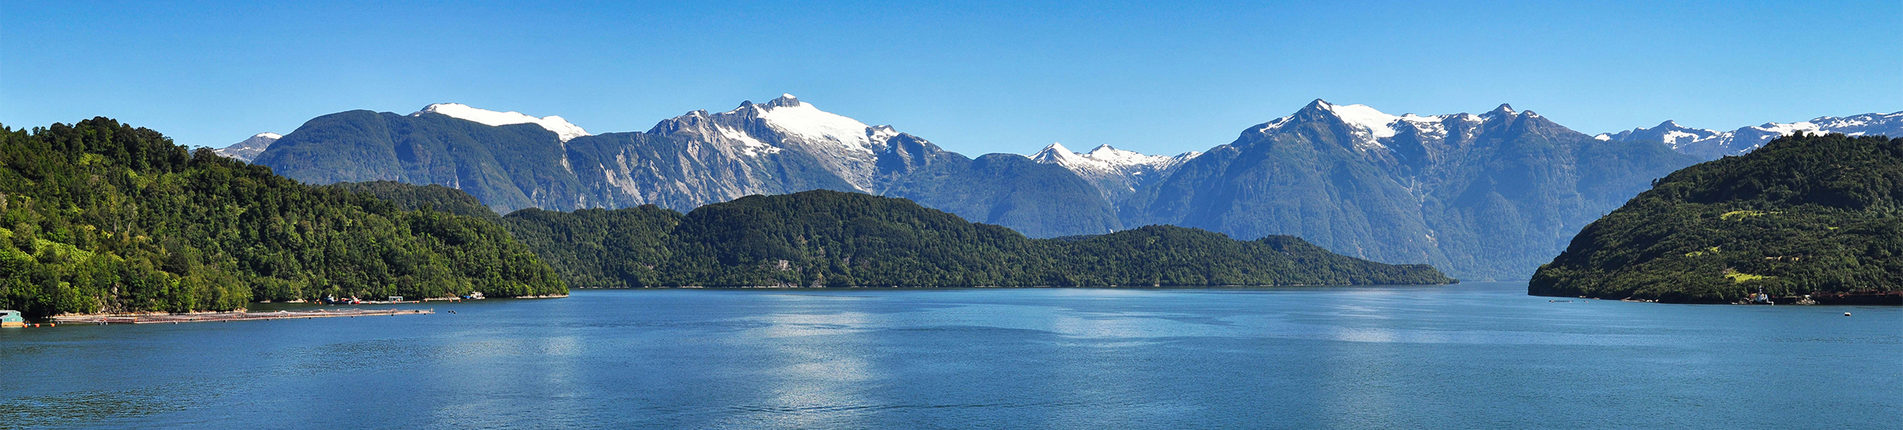 Chilské fjordy